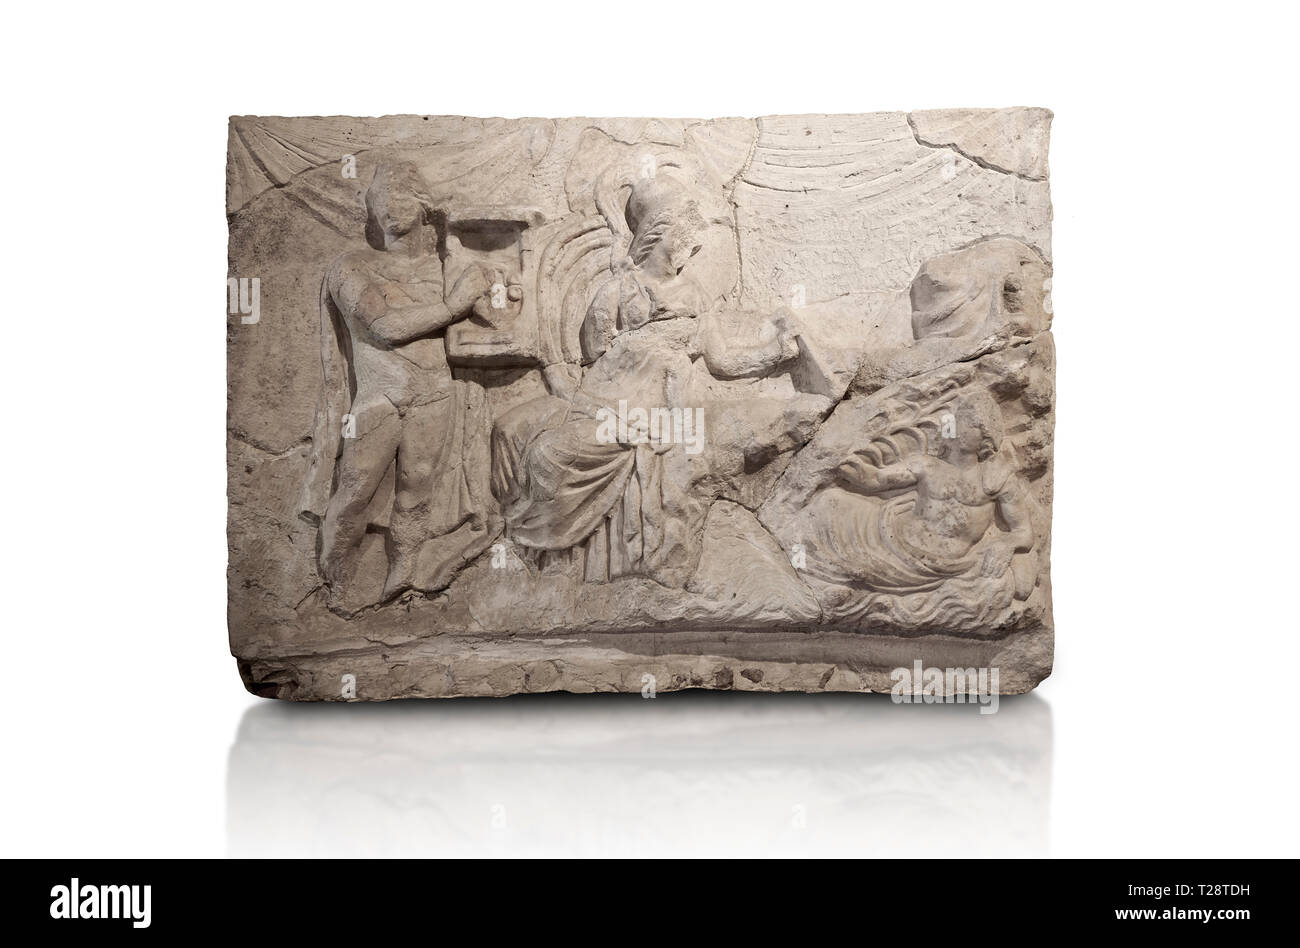 Sculpture relief romain du mythe de Marsyas. 2ème ANNONCE de siècle, romaine Hierapolis Theatre.. Musée Archéologique de Hierapolis, la Turquie. Contre un blanc retour Banque D'Images